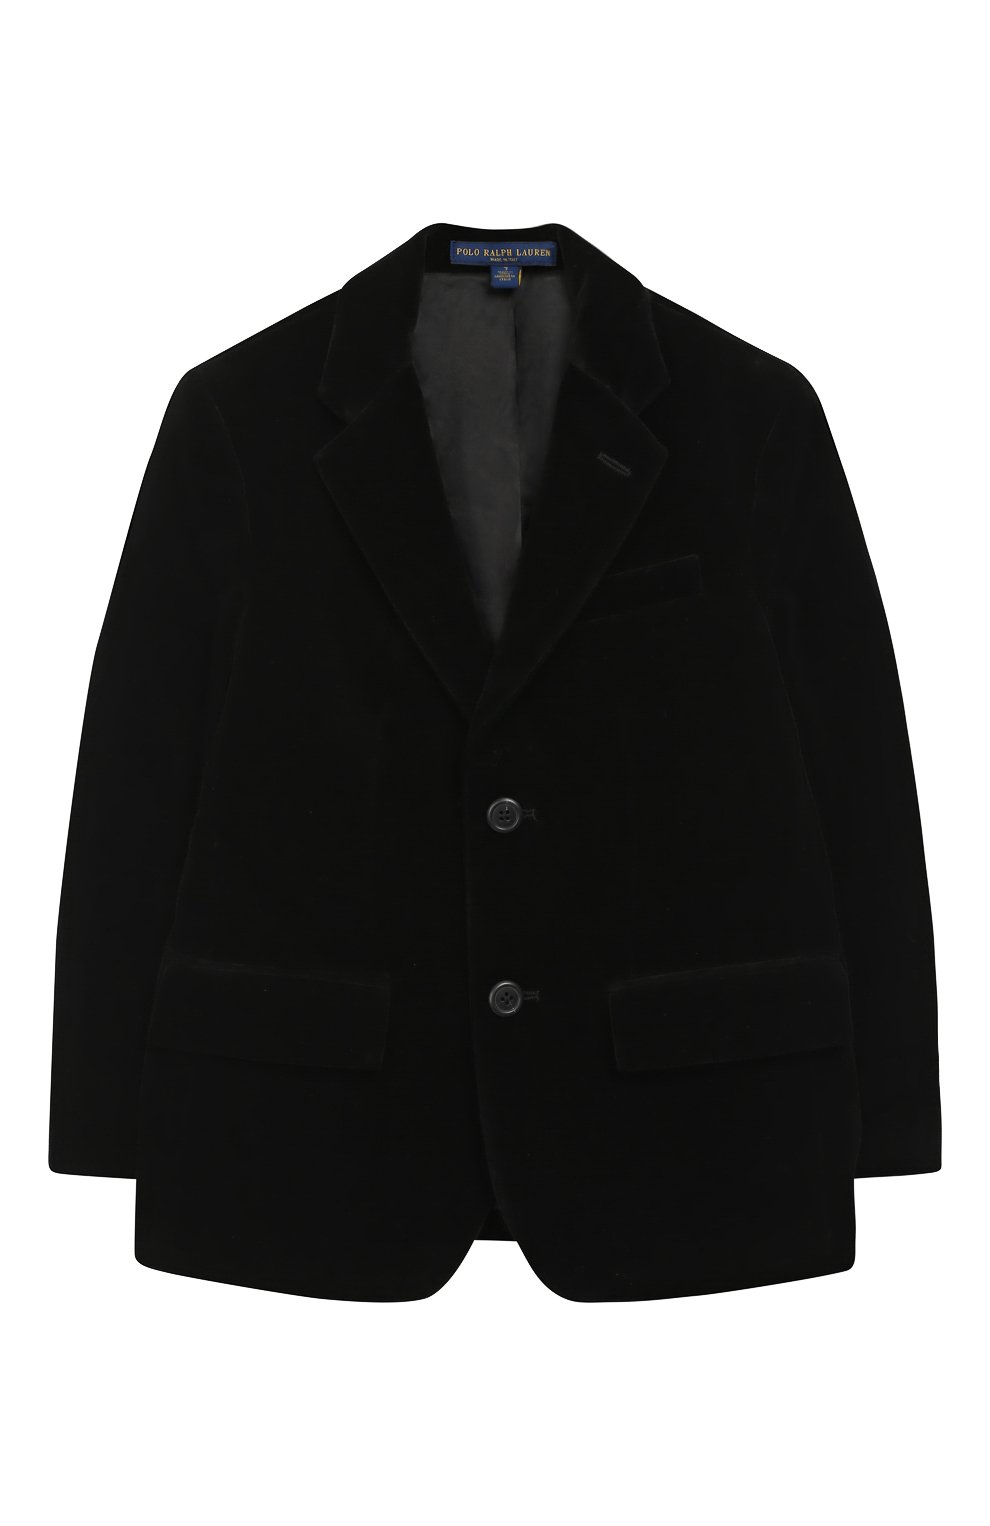 Пиджаки Polo Ralph Lauren, Хлопковый пиджак на двух пуговицах Polo Ralph Lauren, Италия, Чёрный, Хлопок: 100%;, 6252364  - купить